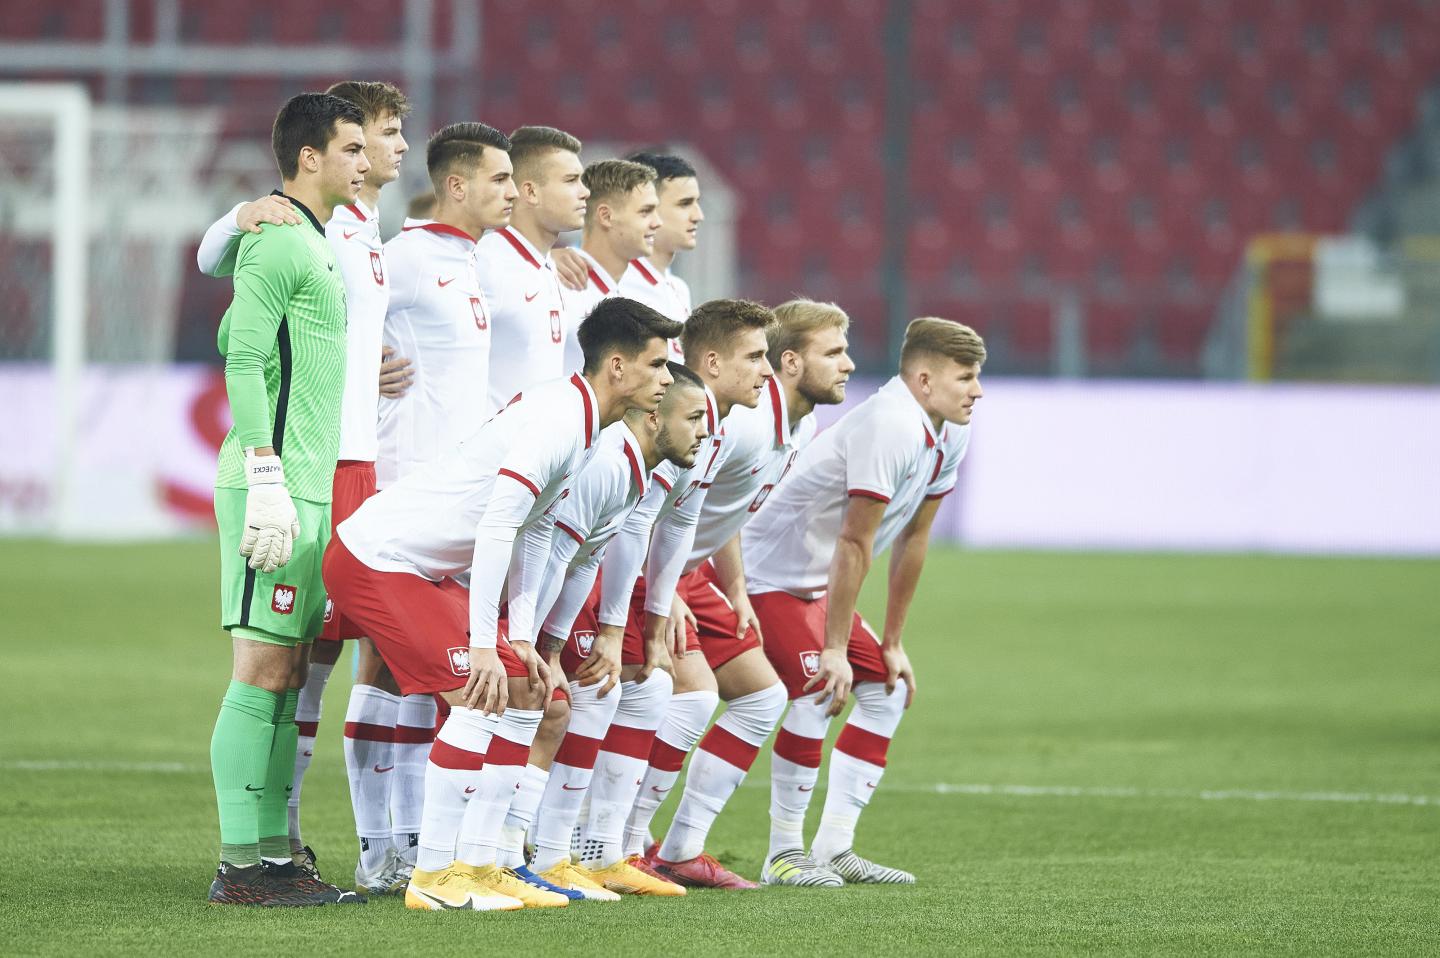 Reprezentacja Polski przed meczem Polska - Łotwa 3:1 U-21 (17.11.2020).